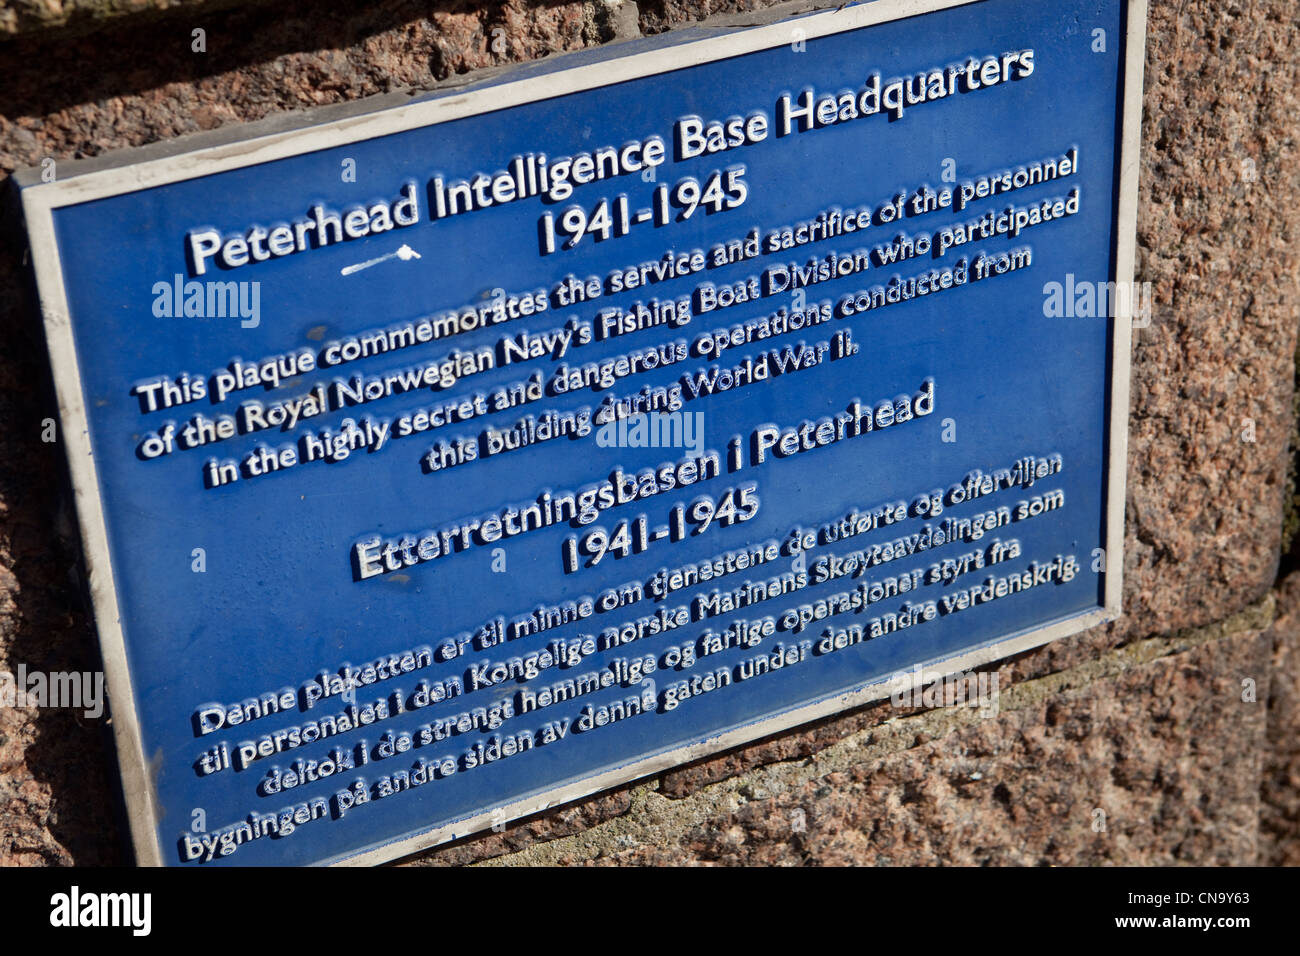 Plaque à quais Peterhead Écosse Royaume-Uni dédiée aux opérations de renseignement secret PENDANT LA SECONDE GUERRE MONDIALE. Banque D'Images